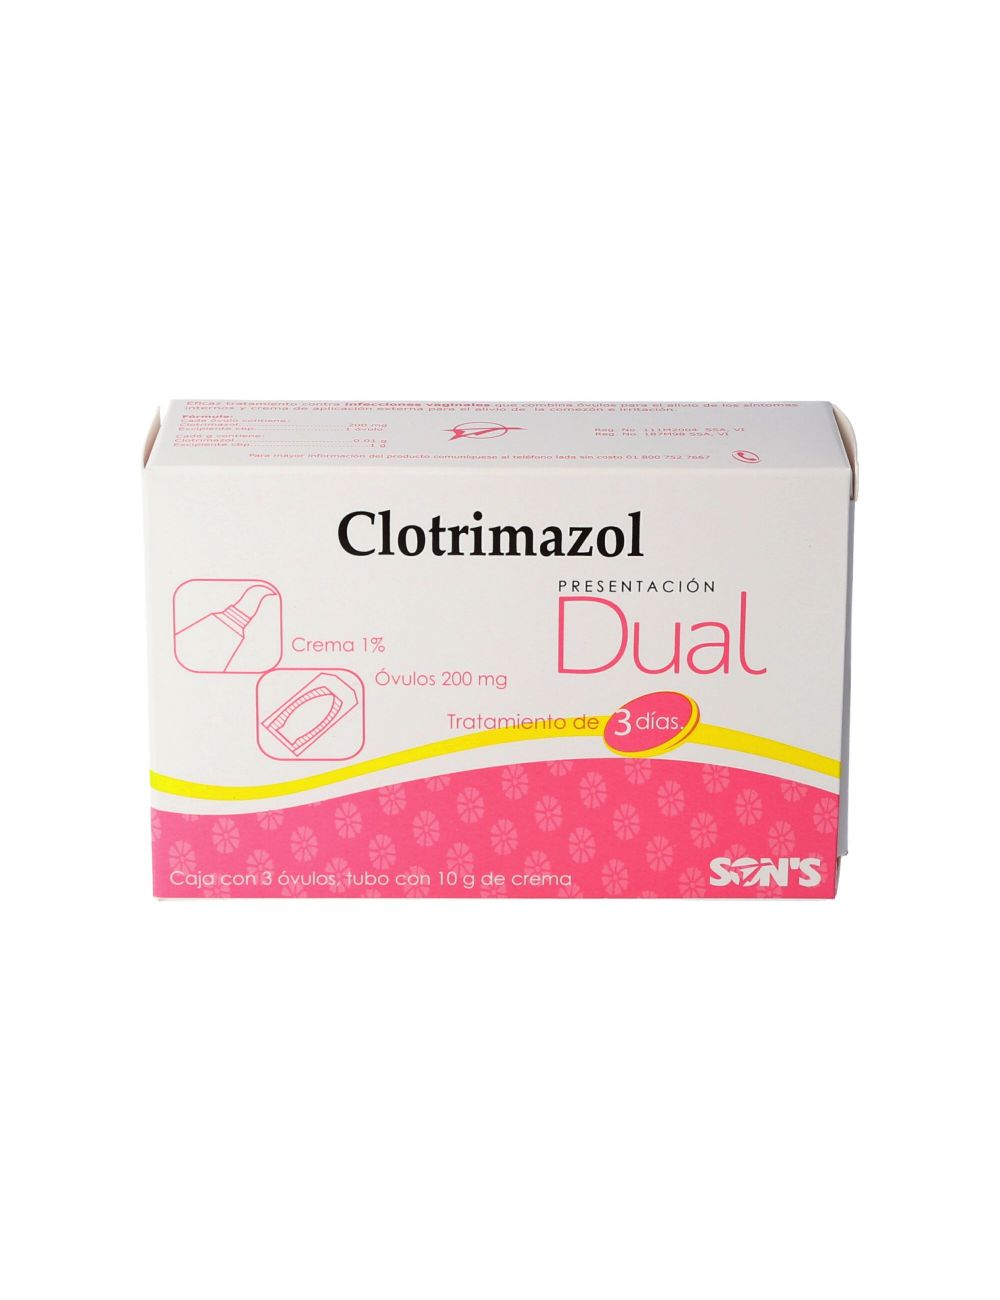 Clotrimazol Dual Ovulos 200 mg/ Crema 1% Caja Con 3 Ovulos y 1 Tubo Con 10 g